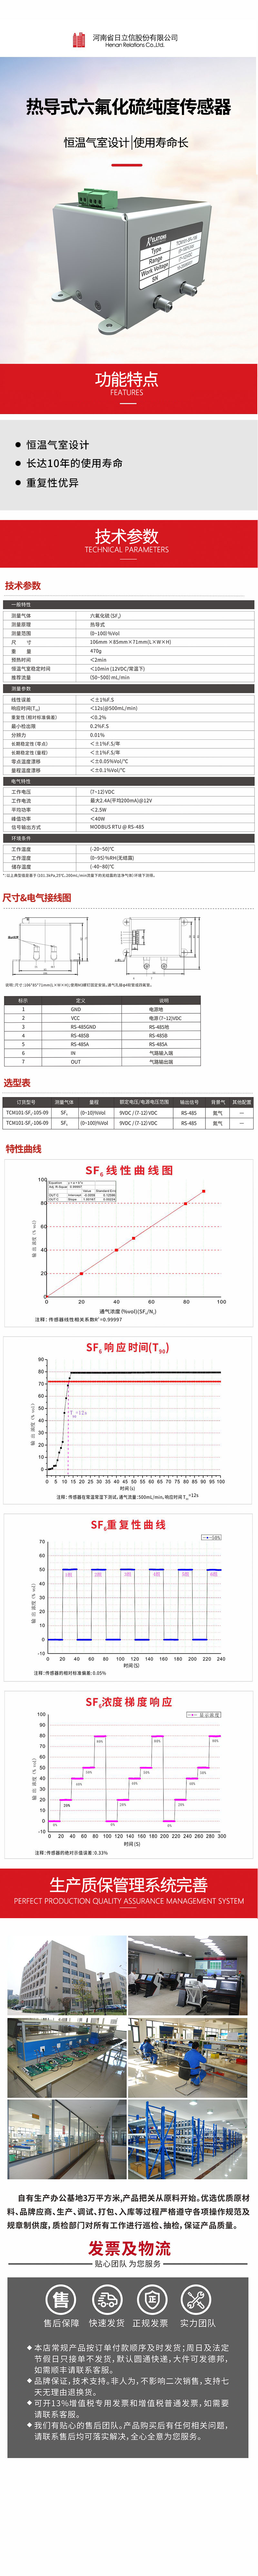 热导式六氟化硫纯度传感器.jpg